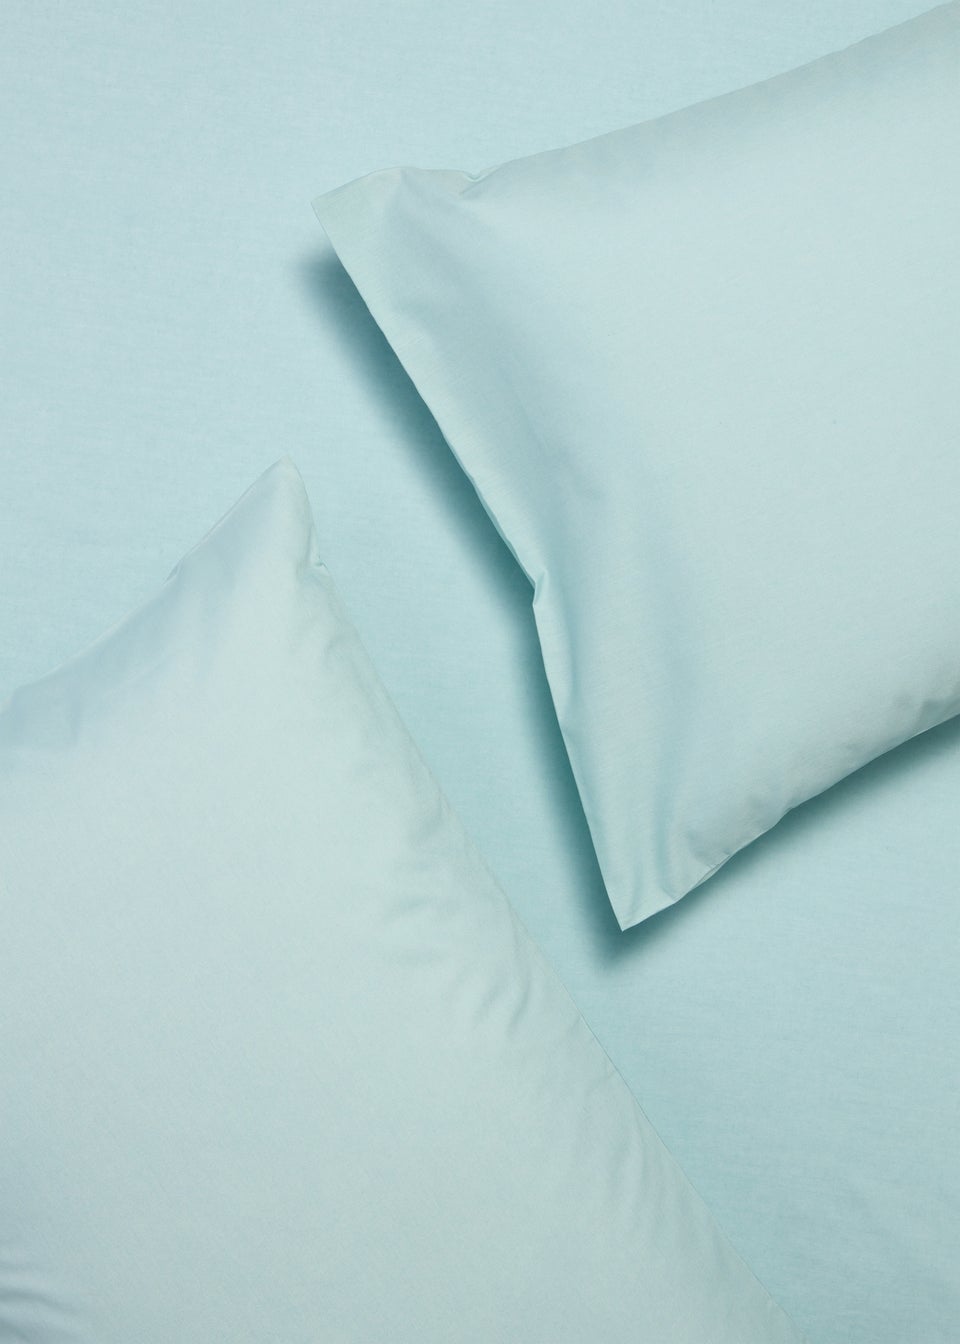 Blue Housewife Pillowcase Pair